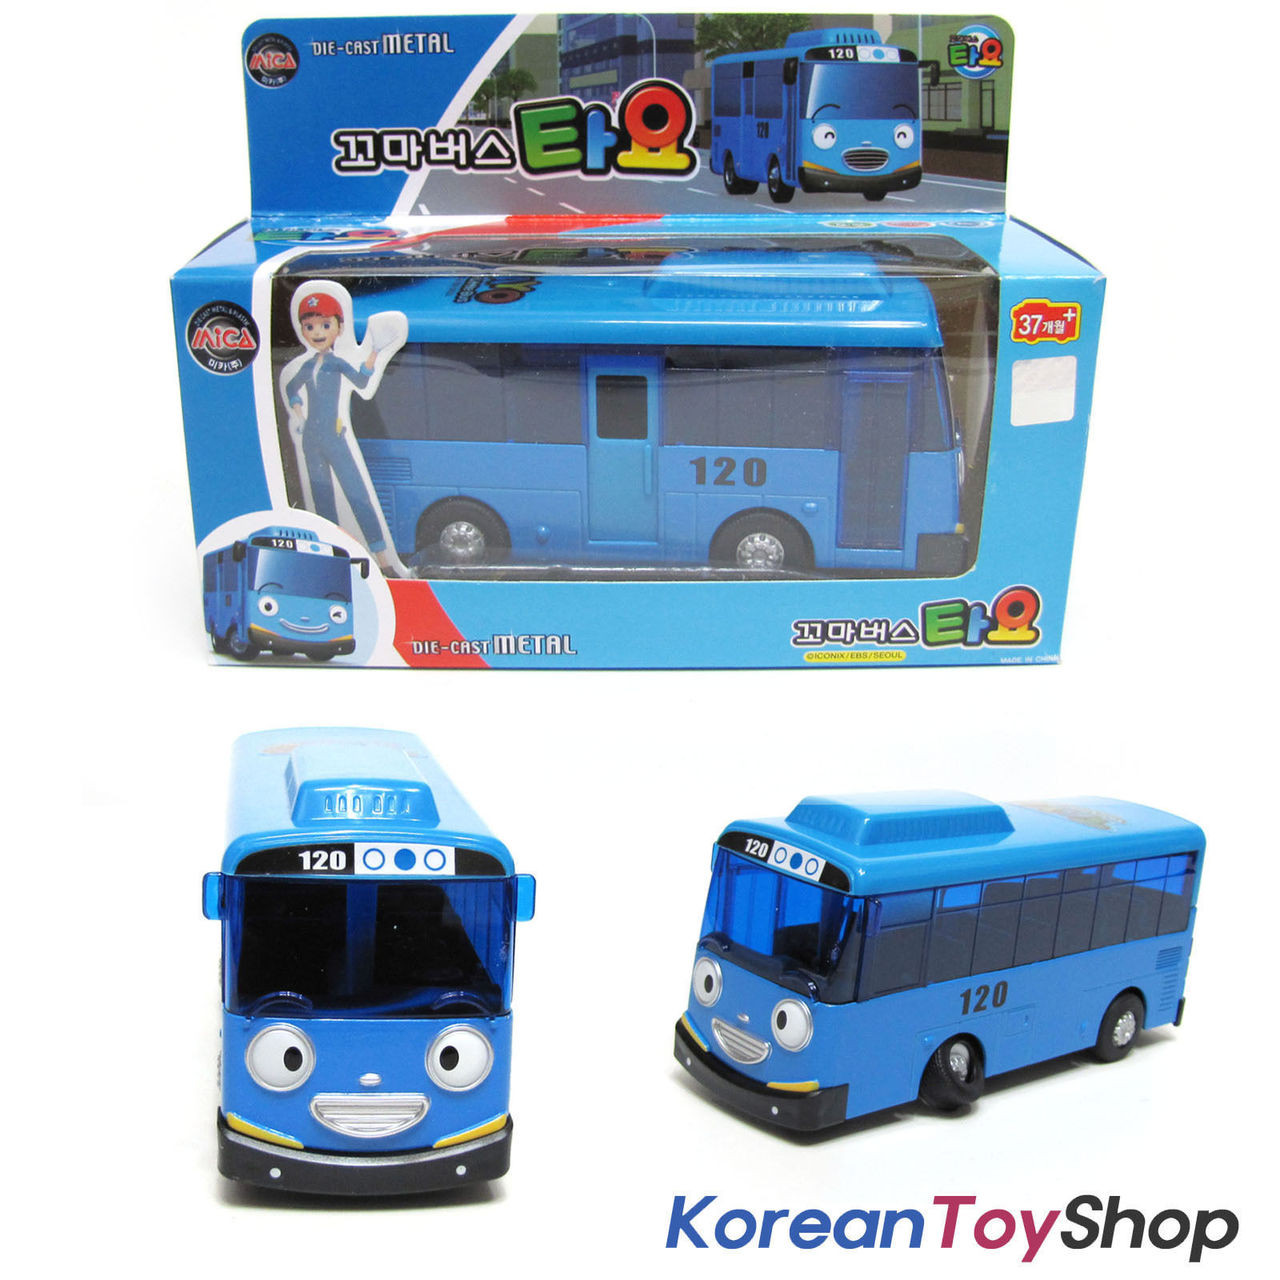 blue toy car